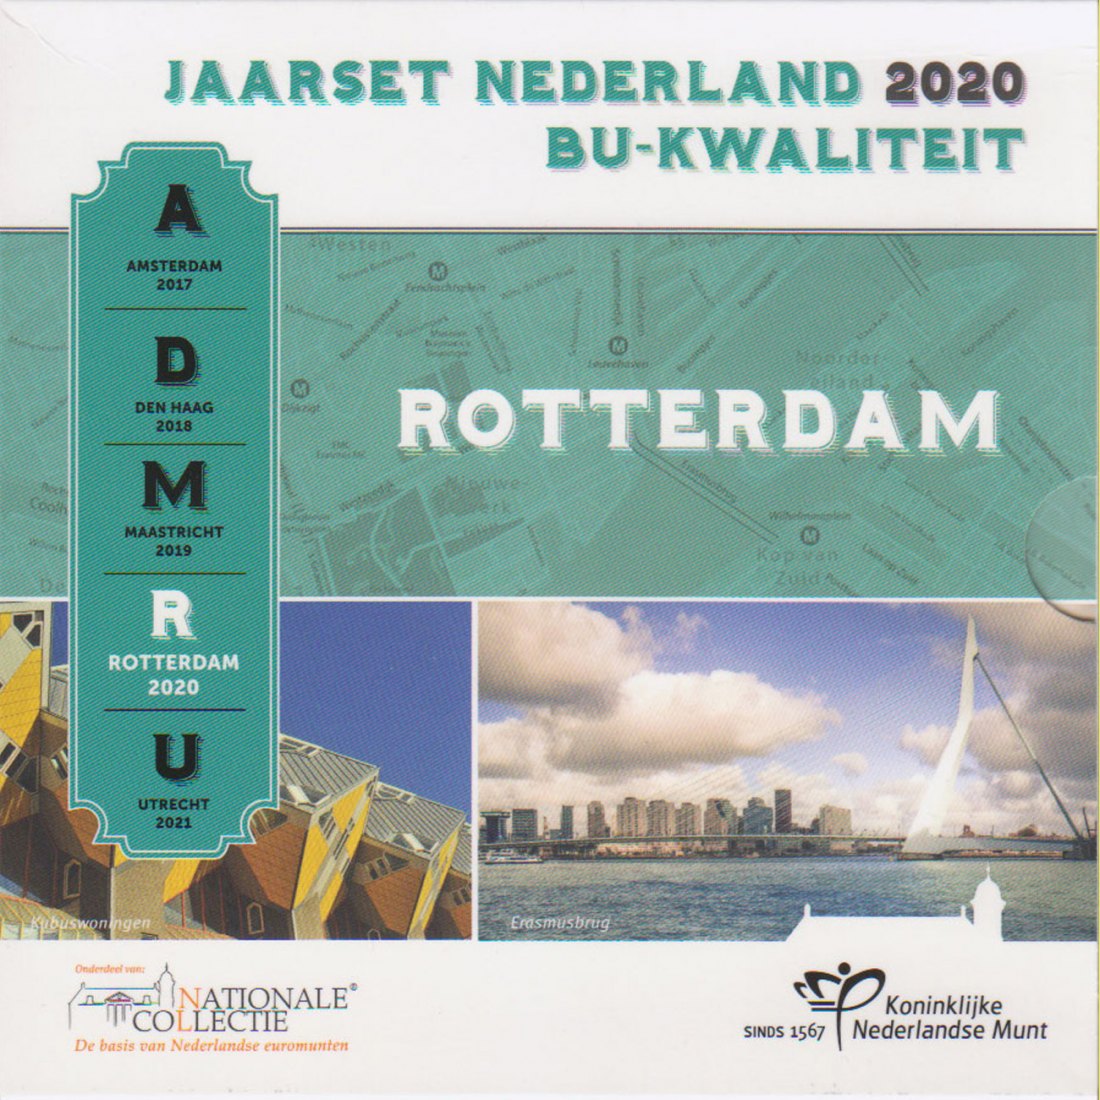  Offiz. KMS Niederlande *Nationale Collectie - Rotterdam* 2020 nur 12.500St! Mz Brücke!   